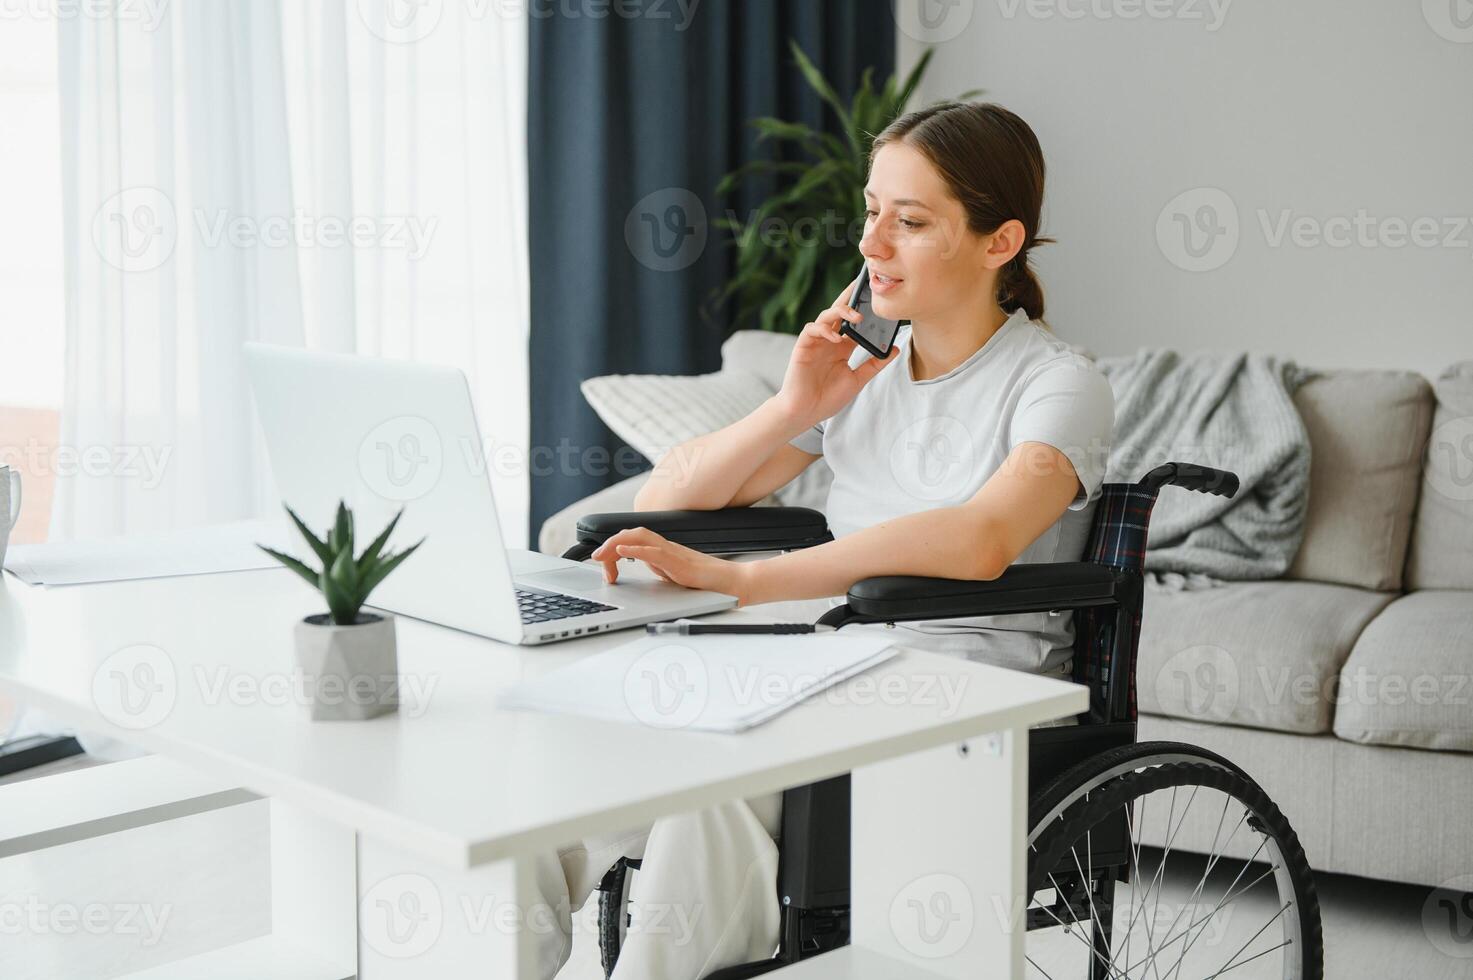 femme dans une fauteuil roulant travaux sur le portable PC dans le Accueil Bureau avec un assistance chien comme une un compagnon photo